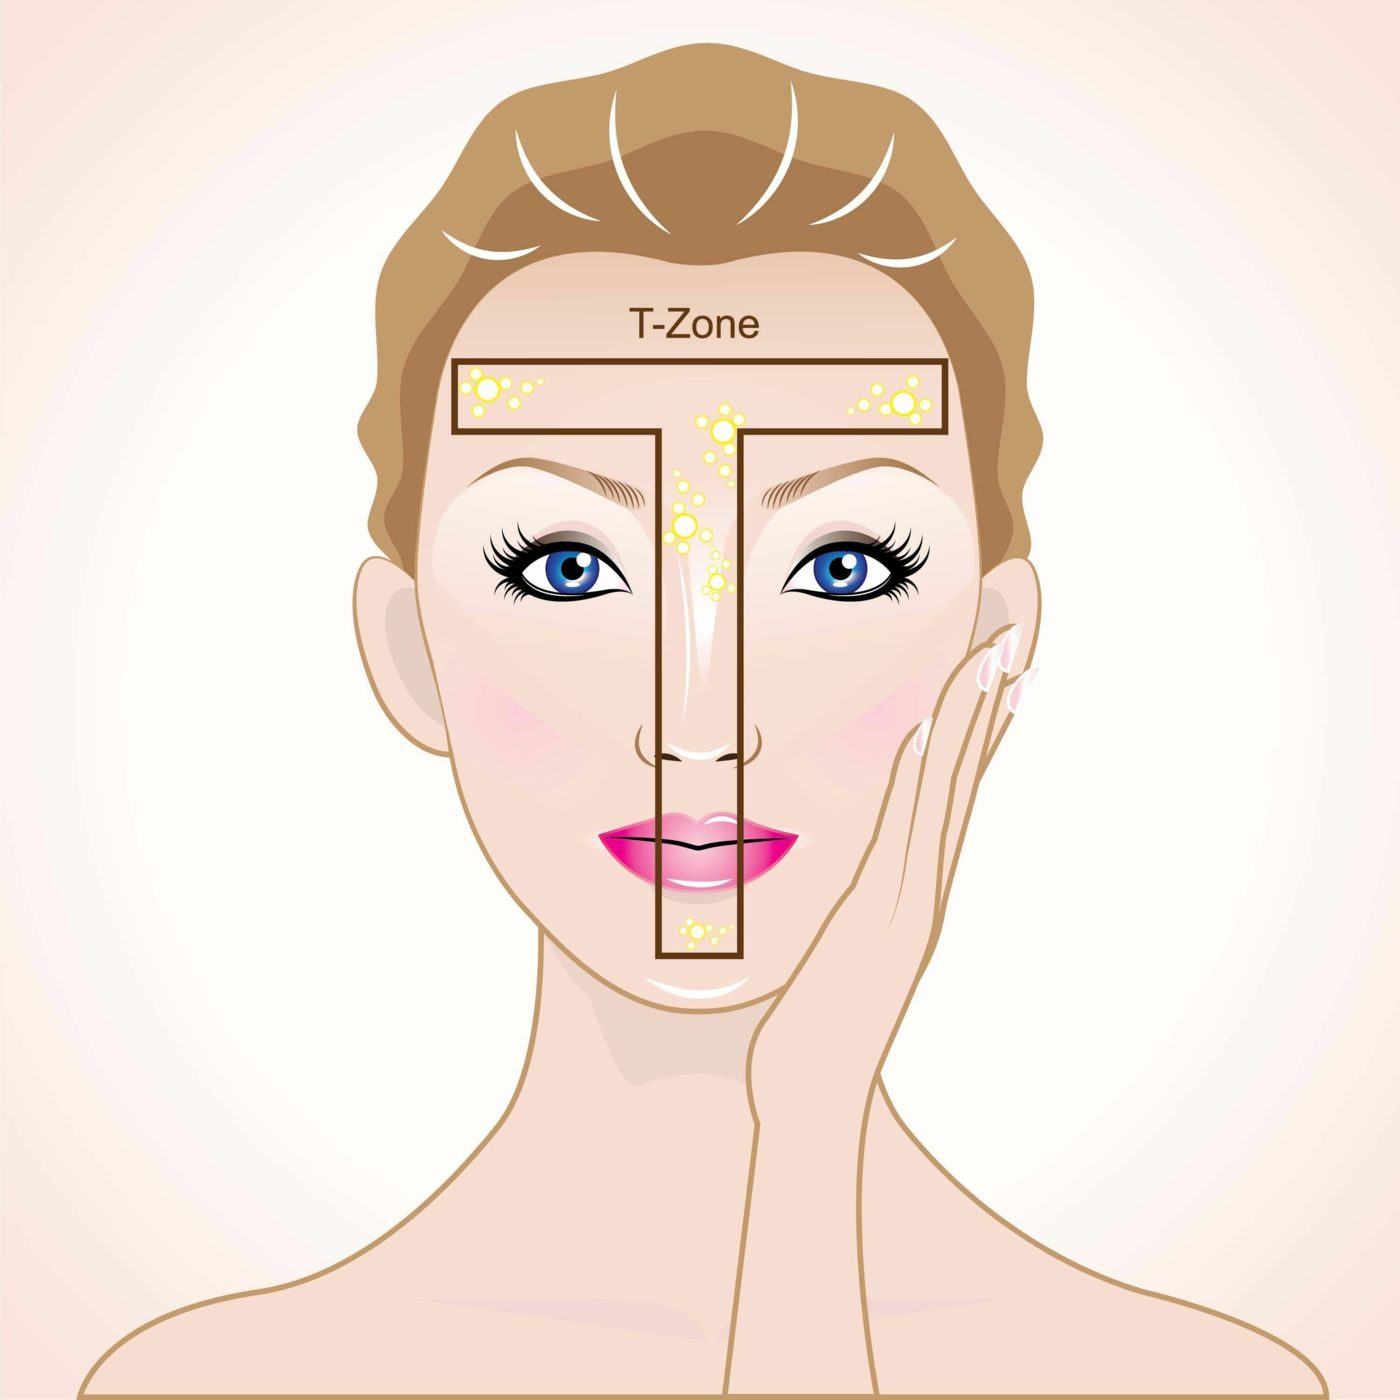 Die T-Zone ist der Bereich um die Nase und der Stirn und wird häufig von Pickel unter der Haut geplagt